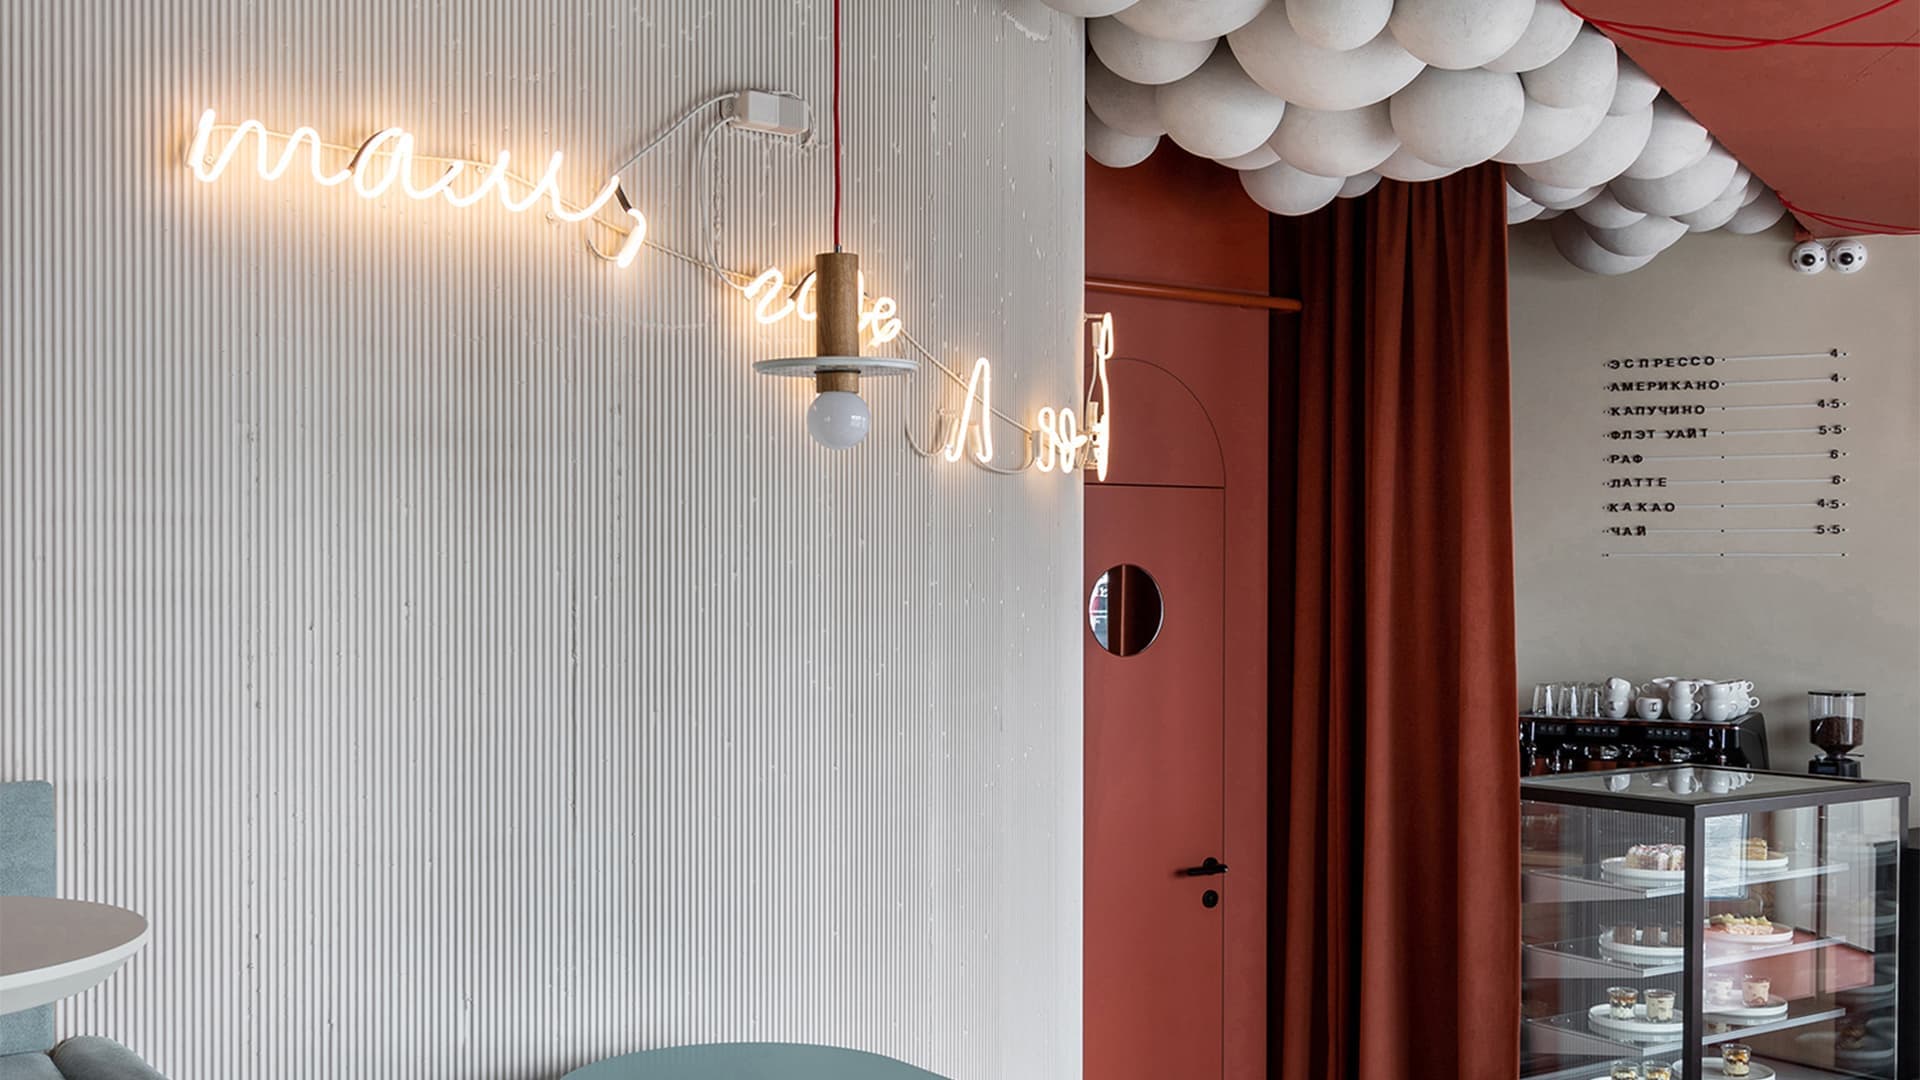 Декоративные шары и ярусная посадка в интерьере семейного кафе — проект Екатерины и Алексея Савицких